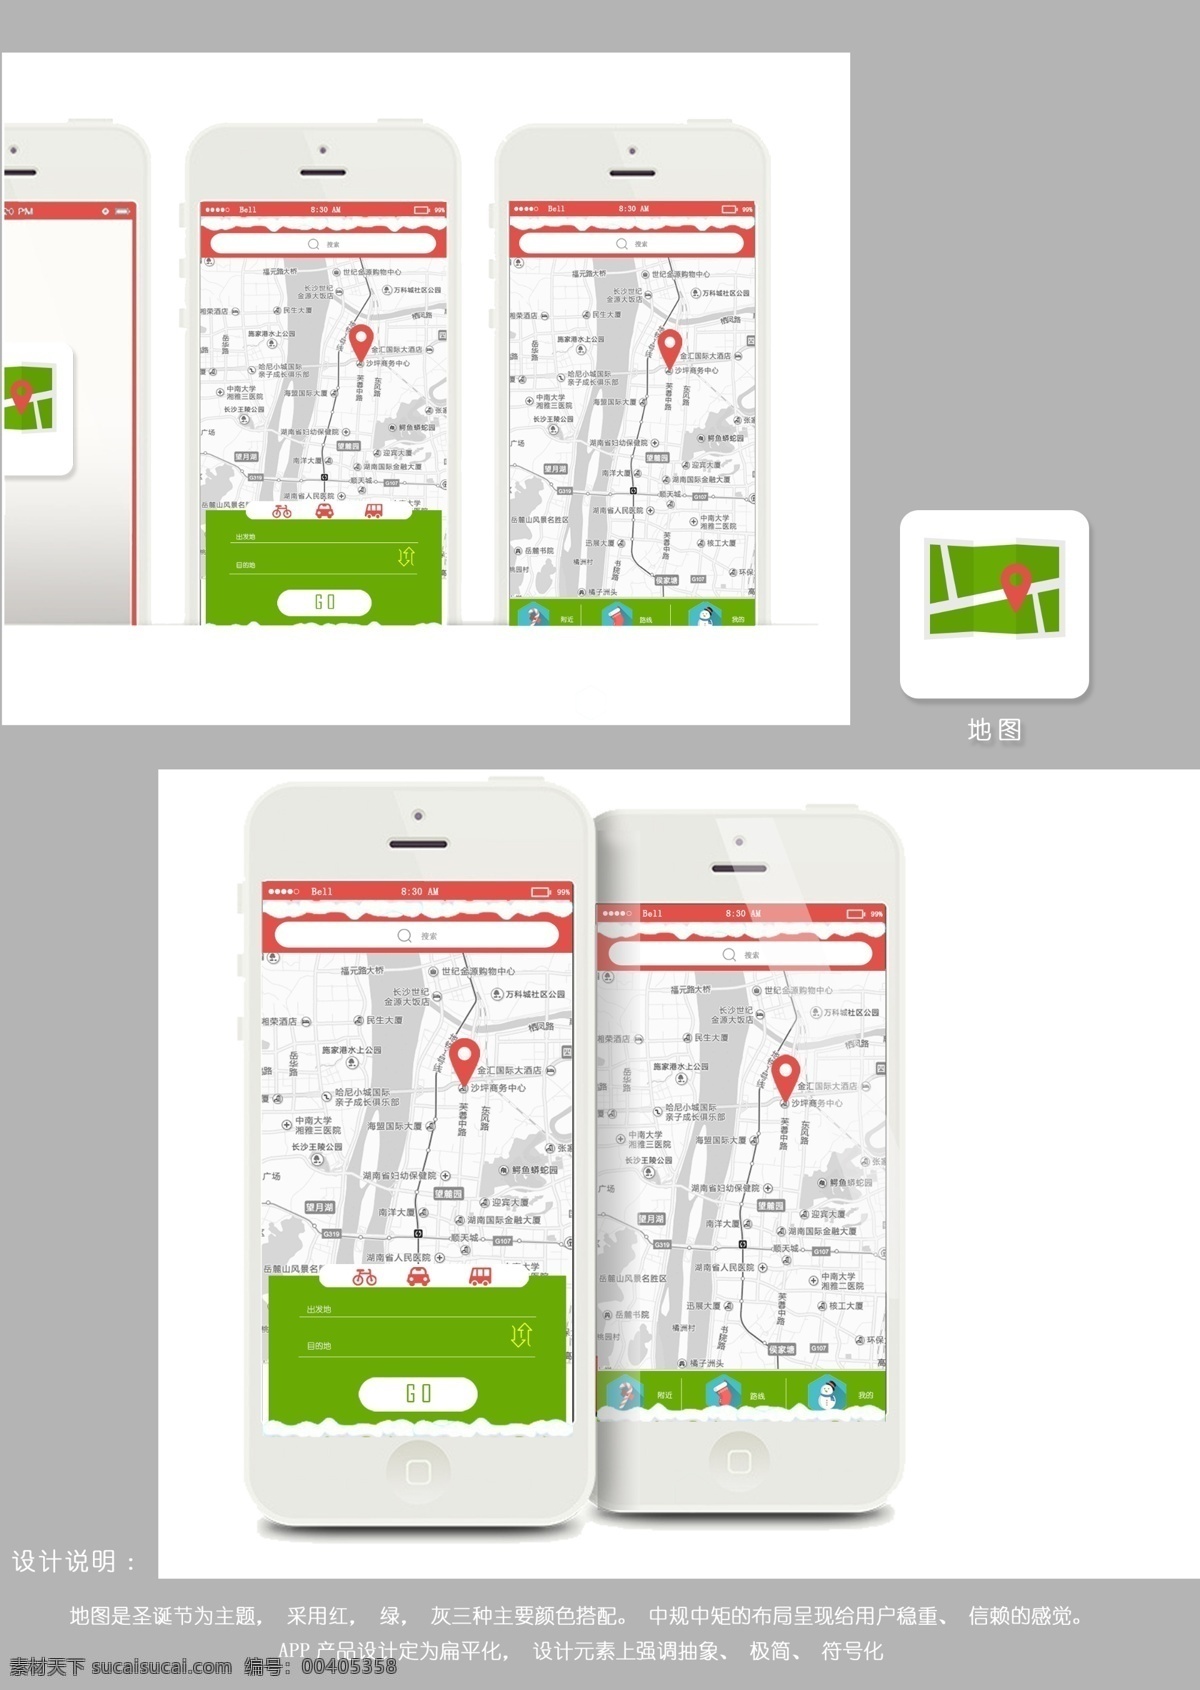 圣诞节 地图 app 模板 扁平化 创意 背景图片 广告背景 高清 设计图 高清图片素材 设计素材 模板设计 版式